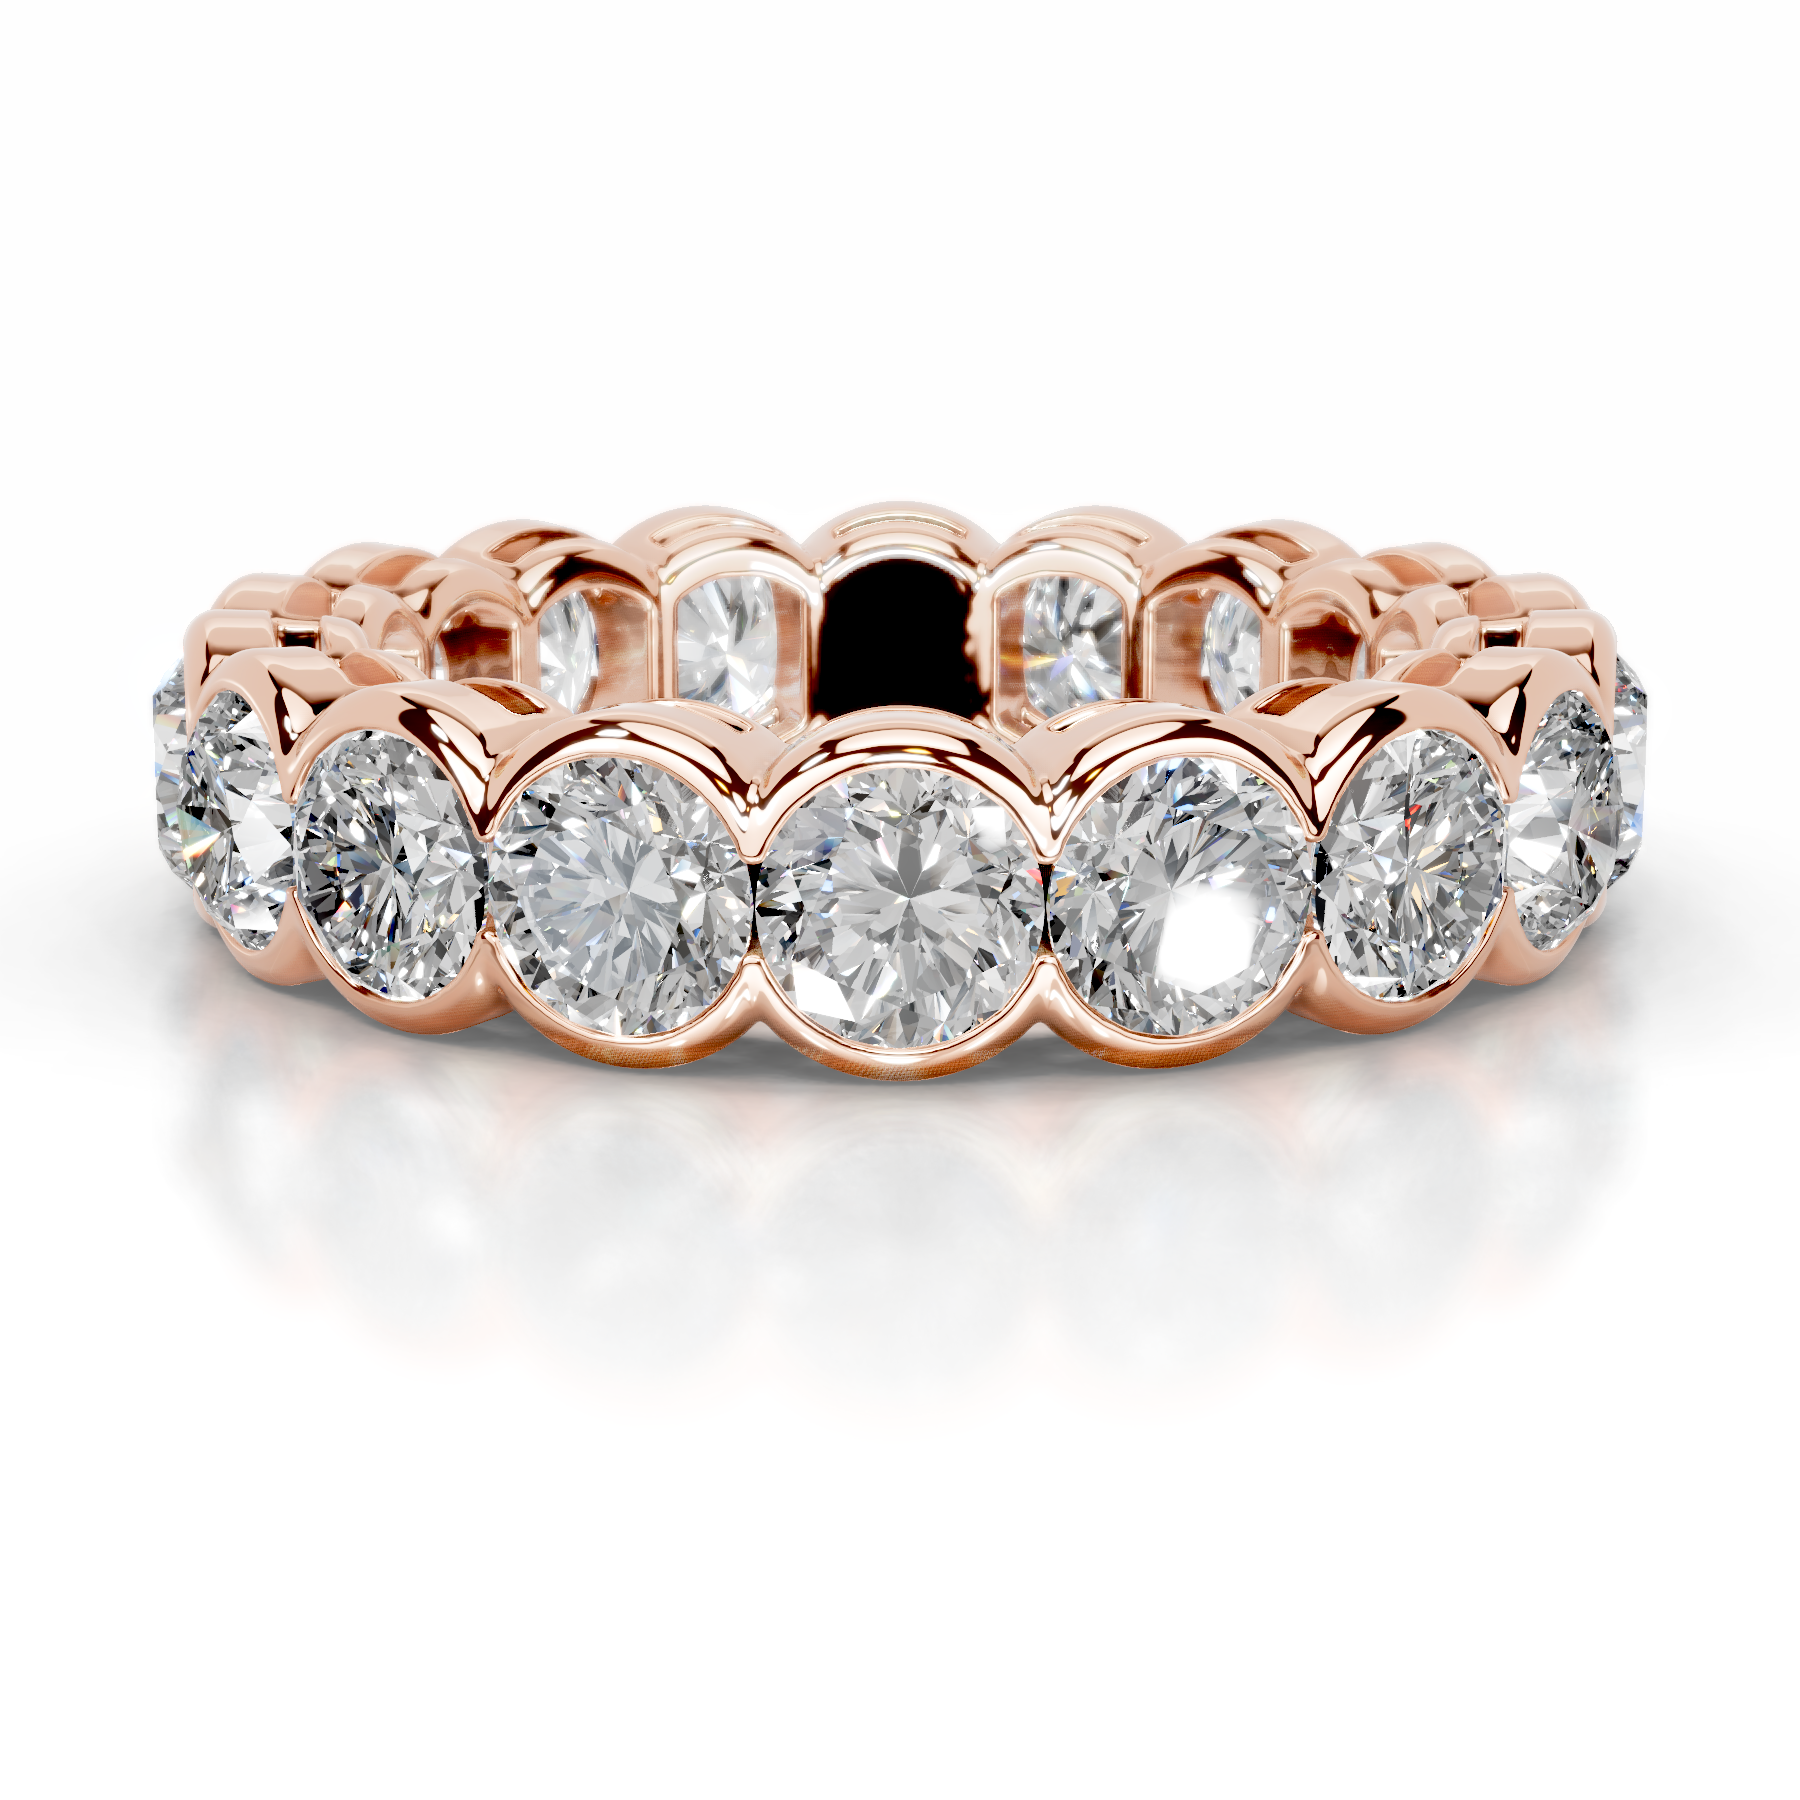 Velinda Diamond Wedding Ring   (4 Carat) -14K Rose Gold